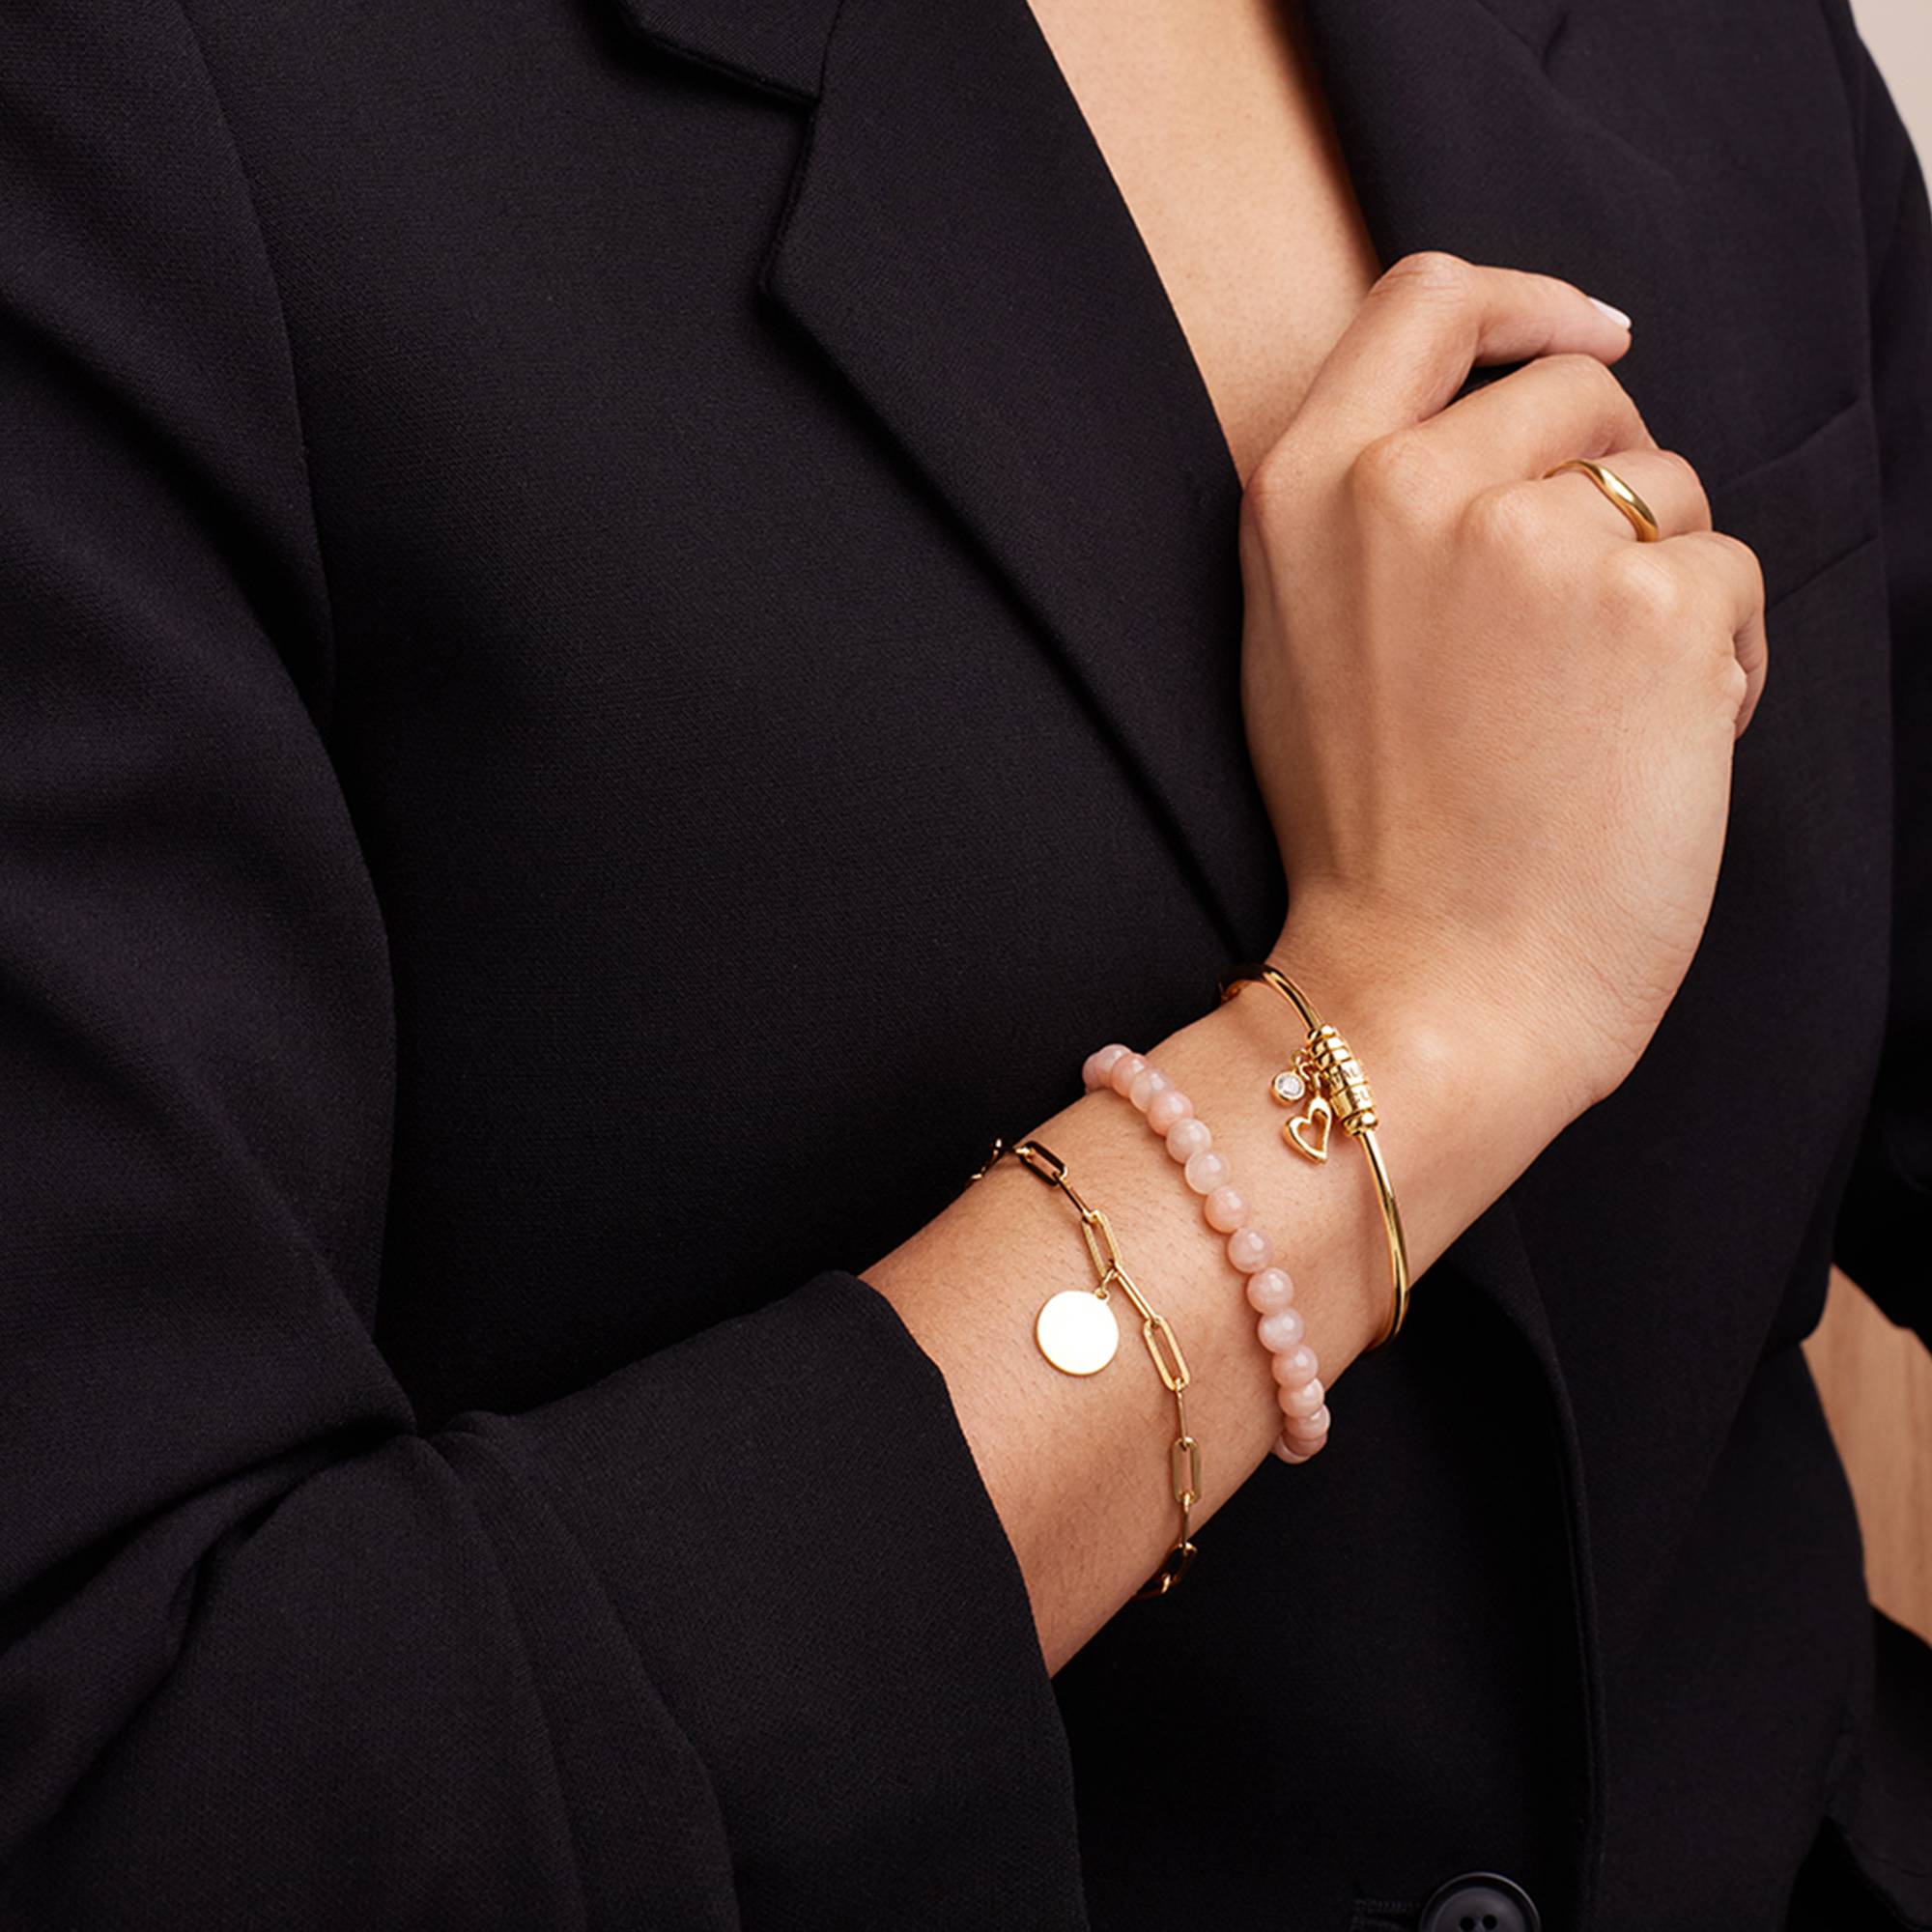 Linda Kreisanhänger-Armreif mit vergoldeten personalisierten Beads-2 Produktfoto